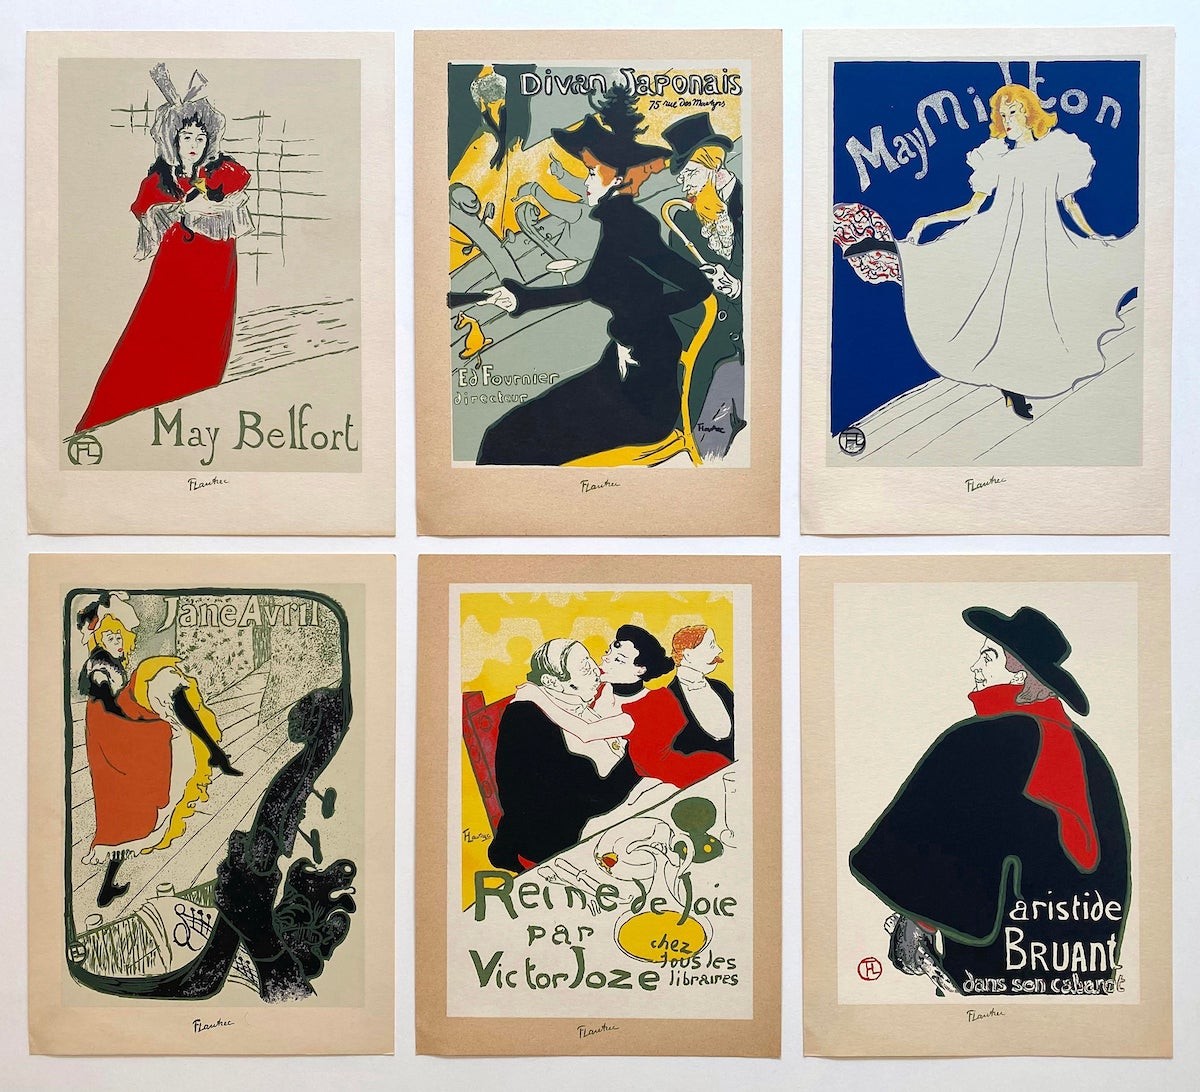 toulouse-lautrec-vintage-1940s-silkscreen-print-french-art-nouveau-posters-set-of-6-5524.jpeg